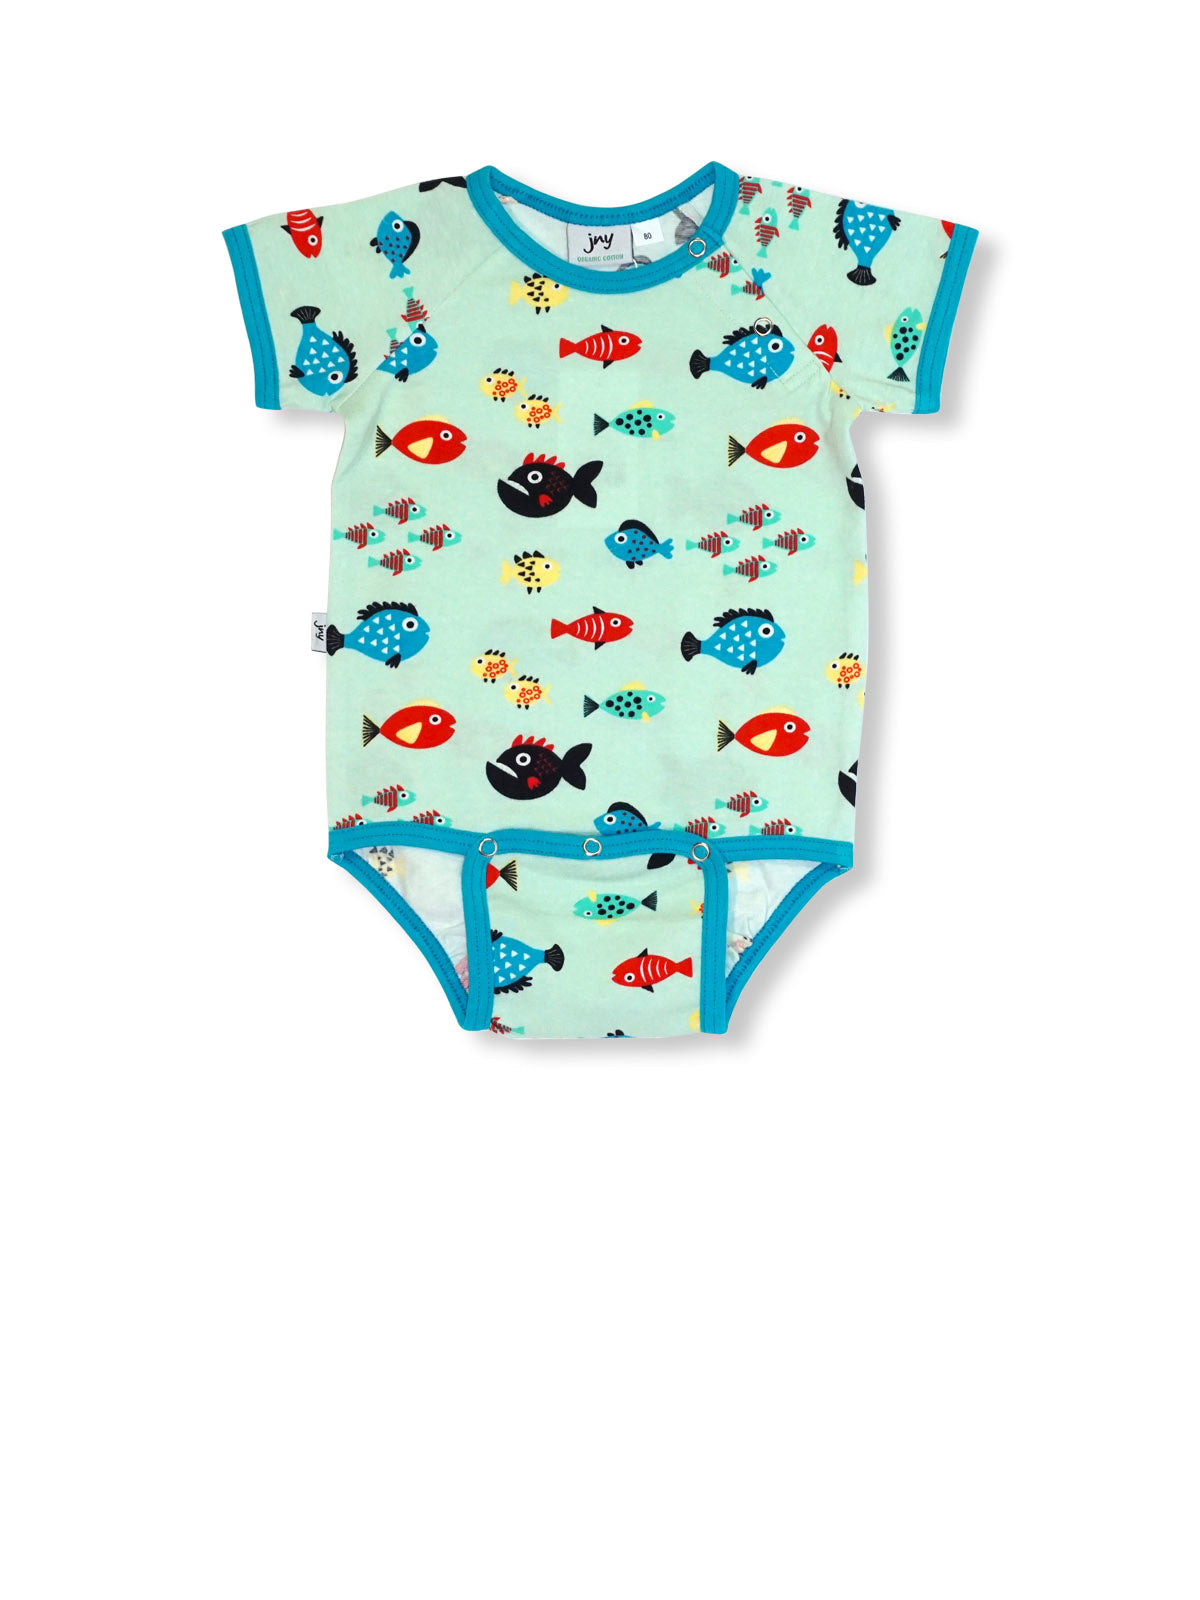 PRICE DROP * JNY - S/S Body Suit - Swimming Fish